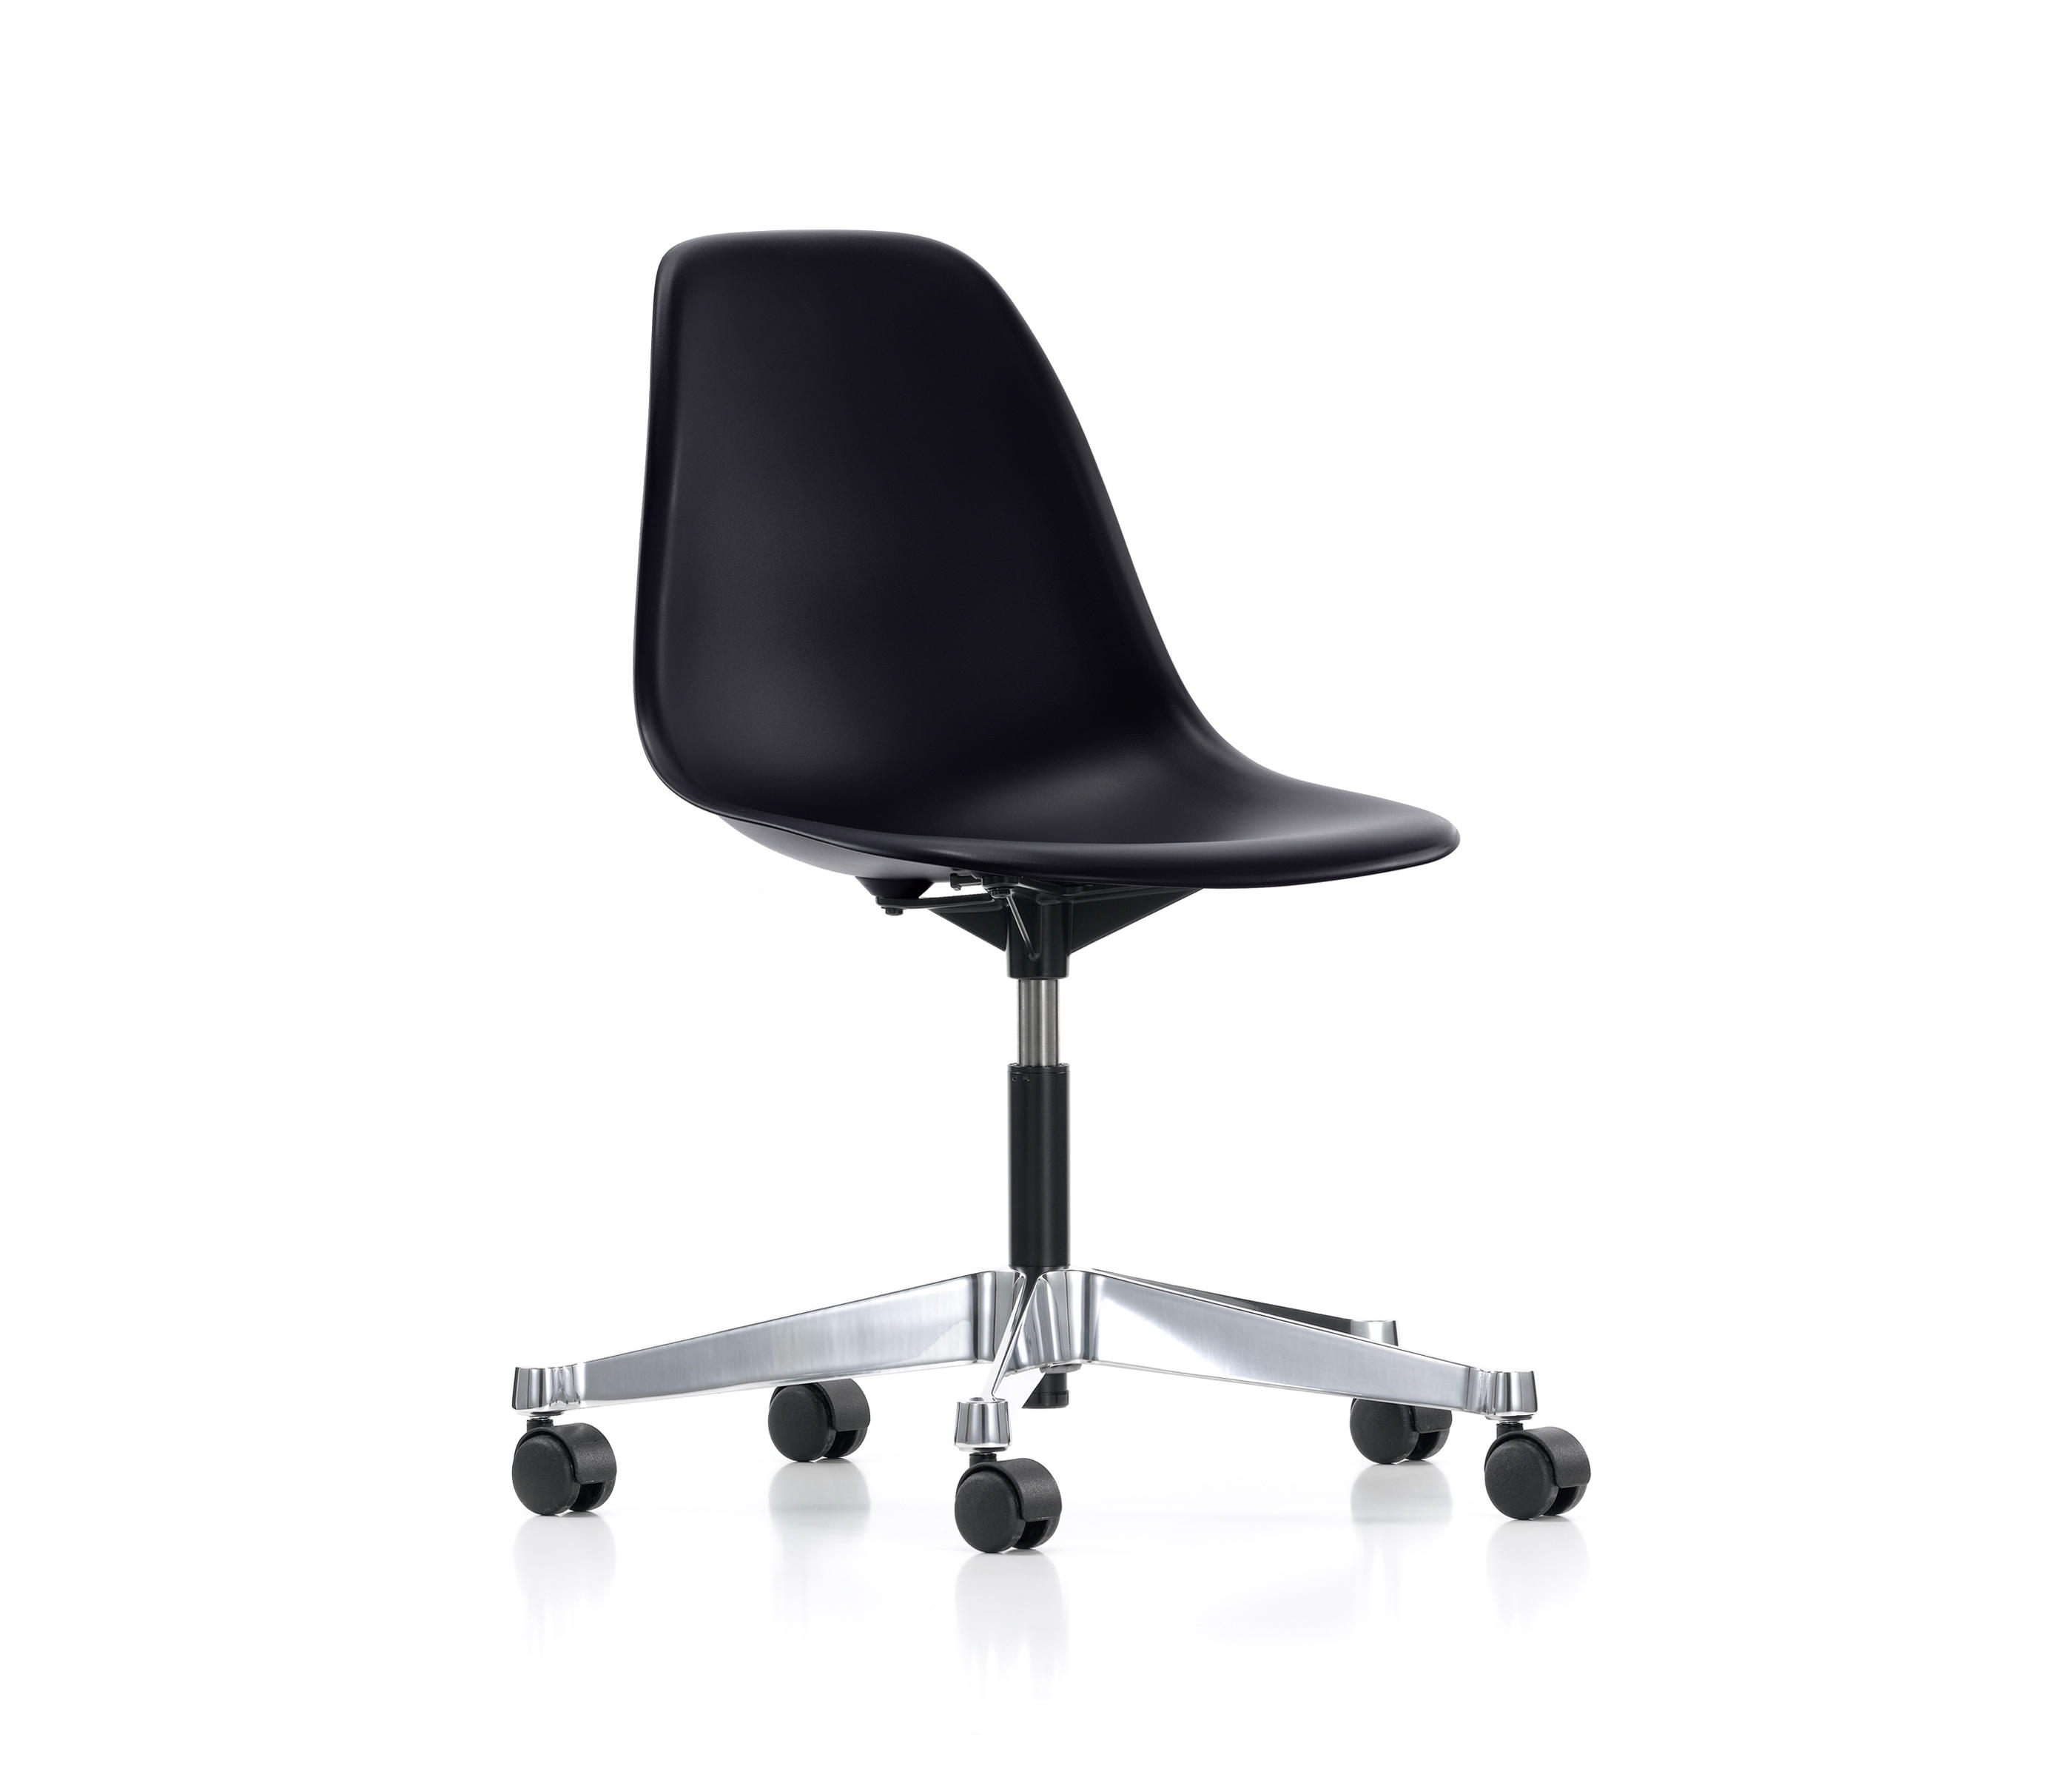 Пластиковые кресла офисные. Кресло Vitra Eames. Кресло Vitra Eames Side Chair. Vitra кресло офисное. Офисный стул Vitra.